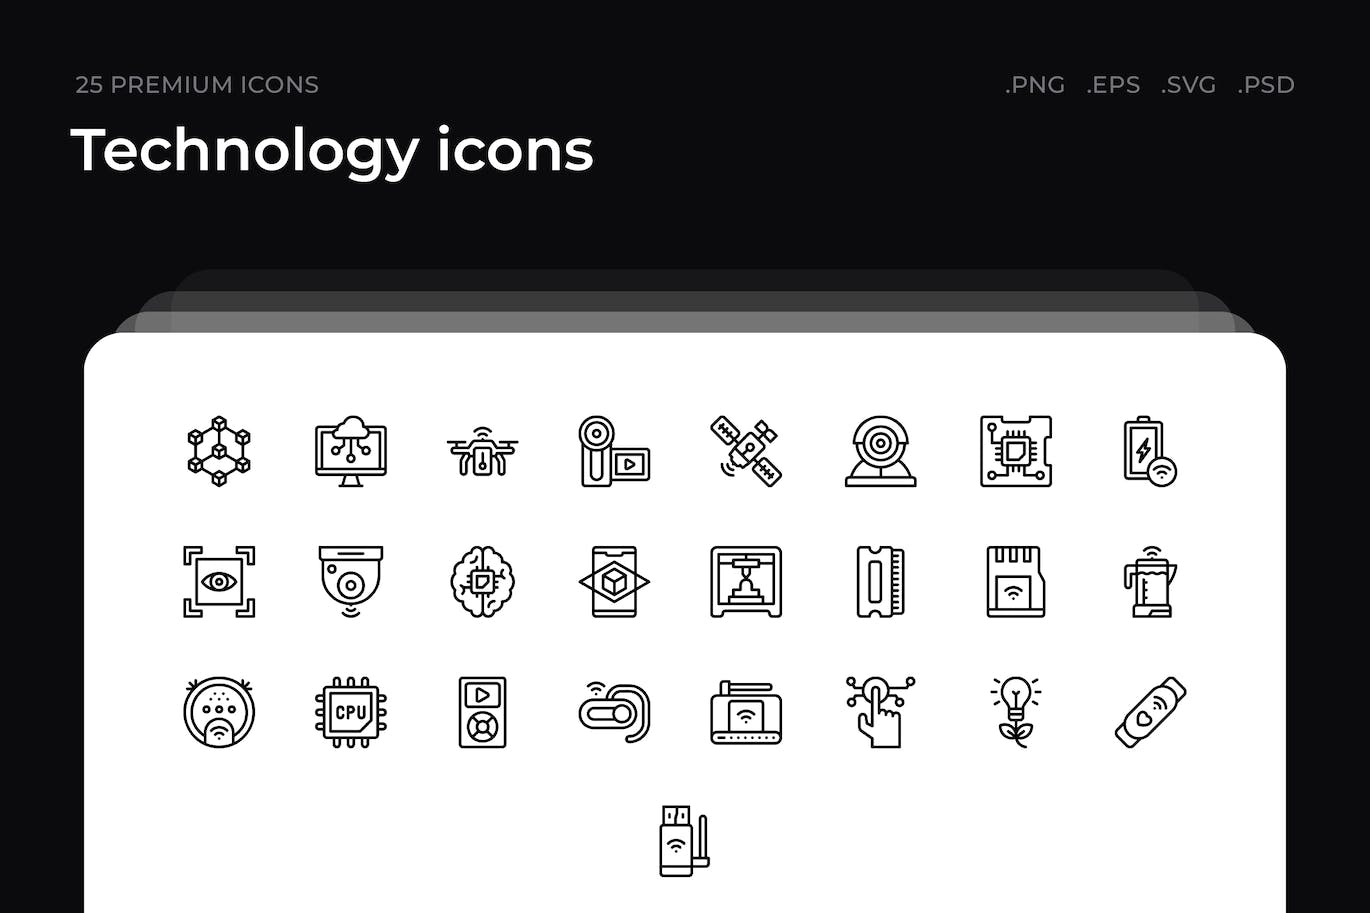 25枚技术主题简约线条矢量图标 Technology icons 图标素材 第1张